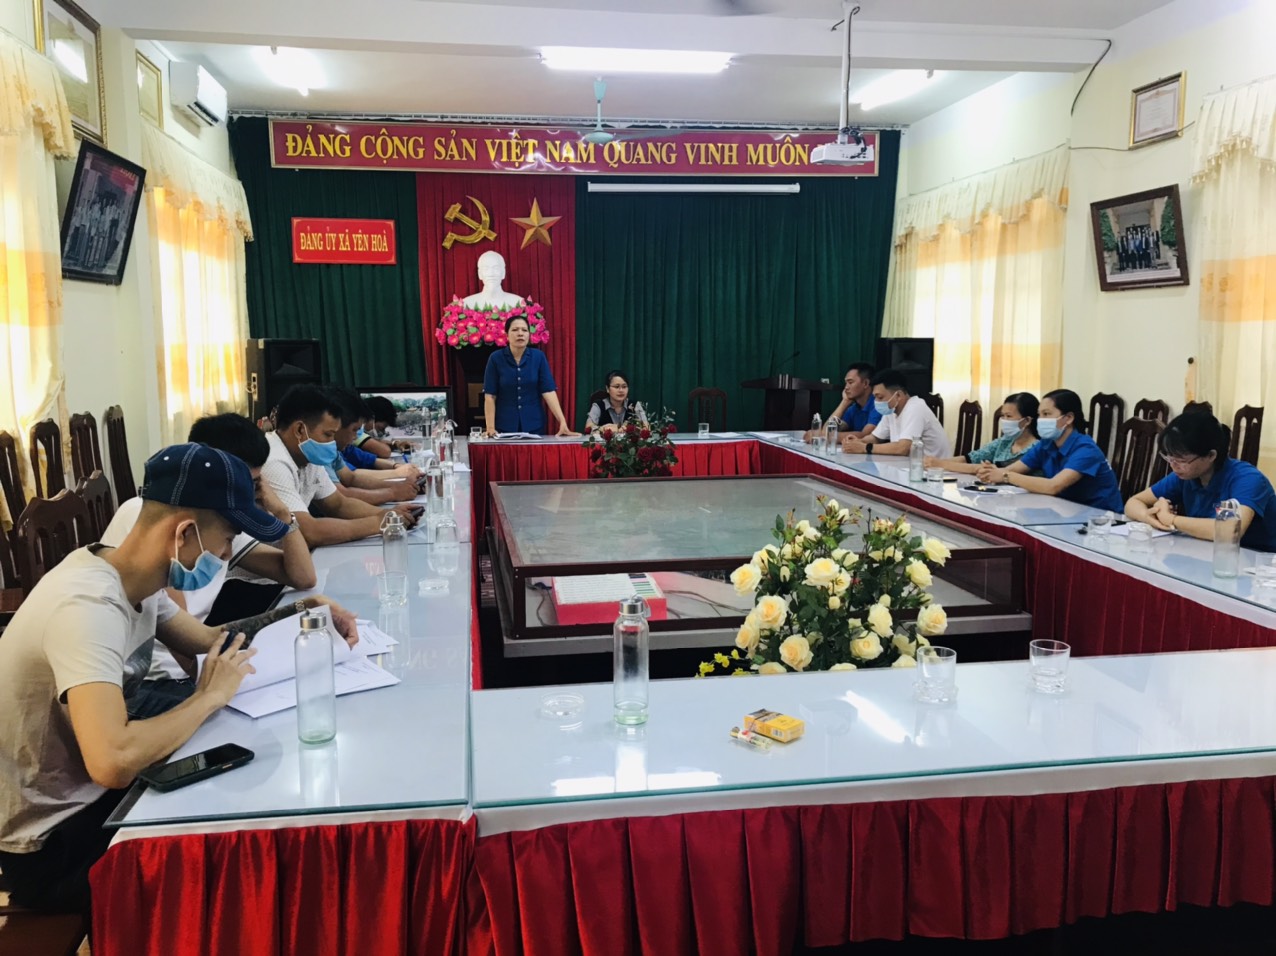 BCH Đoàn xã Yên Hòa tổ chức hội nghị sơ kết công tác Đoàn và phong trào thanh thiếu nhi 6 tháng đầu năm, phương hướng nhiệm vụ công tác 6 tháng cuối năm 2021.